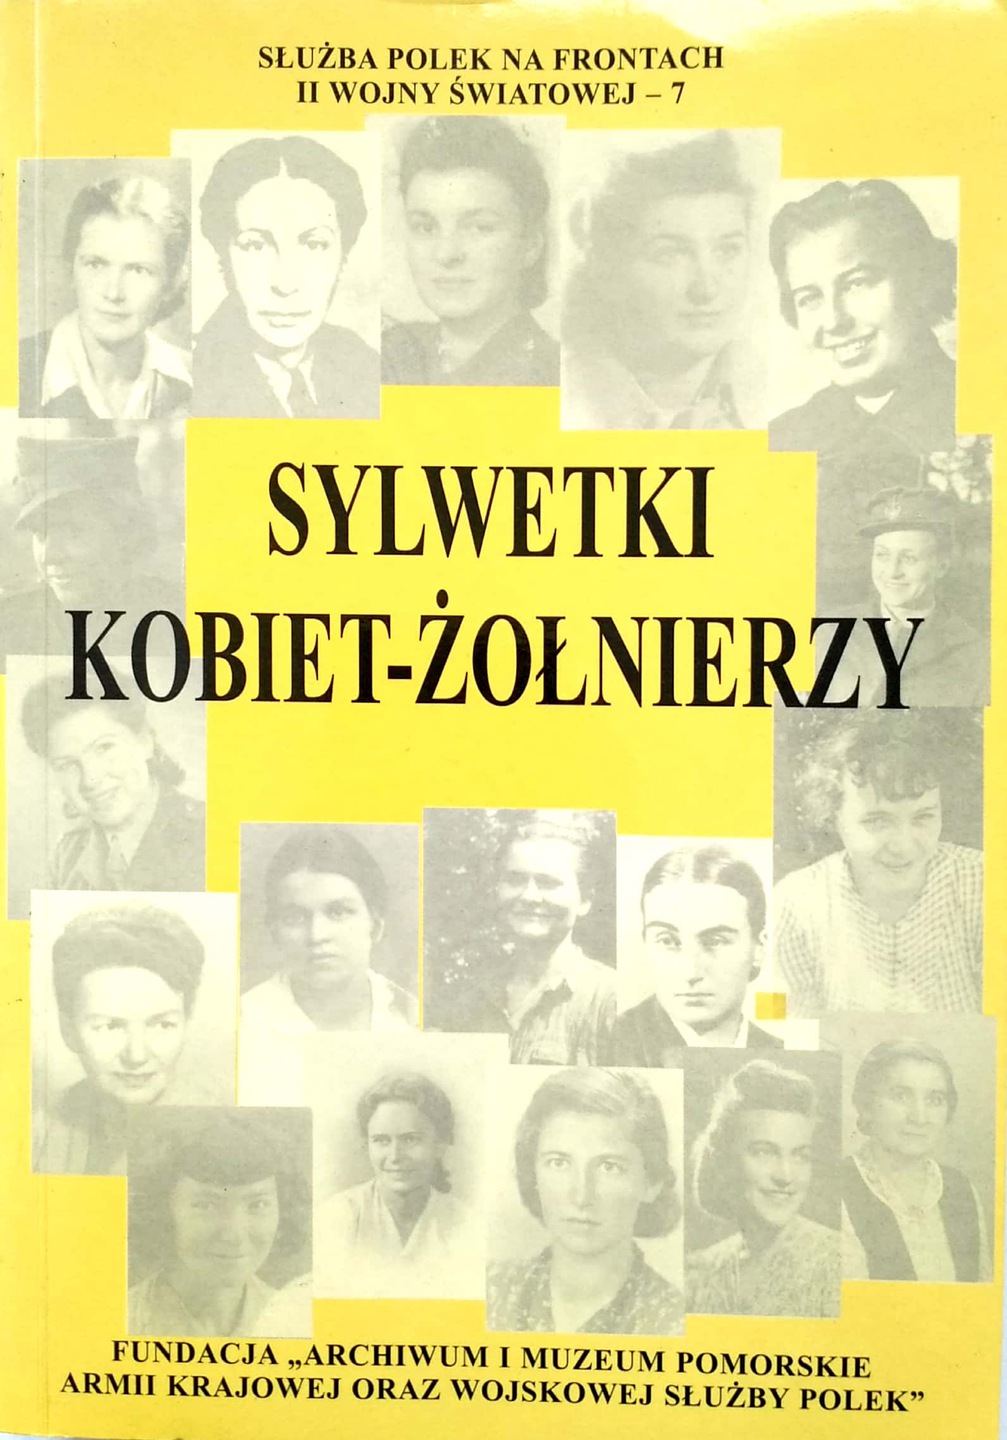 Sylwetki kobiet-żołnierzy I Służba Polek na frontach II wojny światowej T.7 (red. K.Kabzińska)